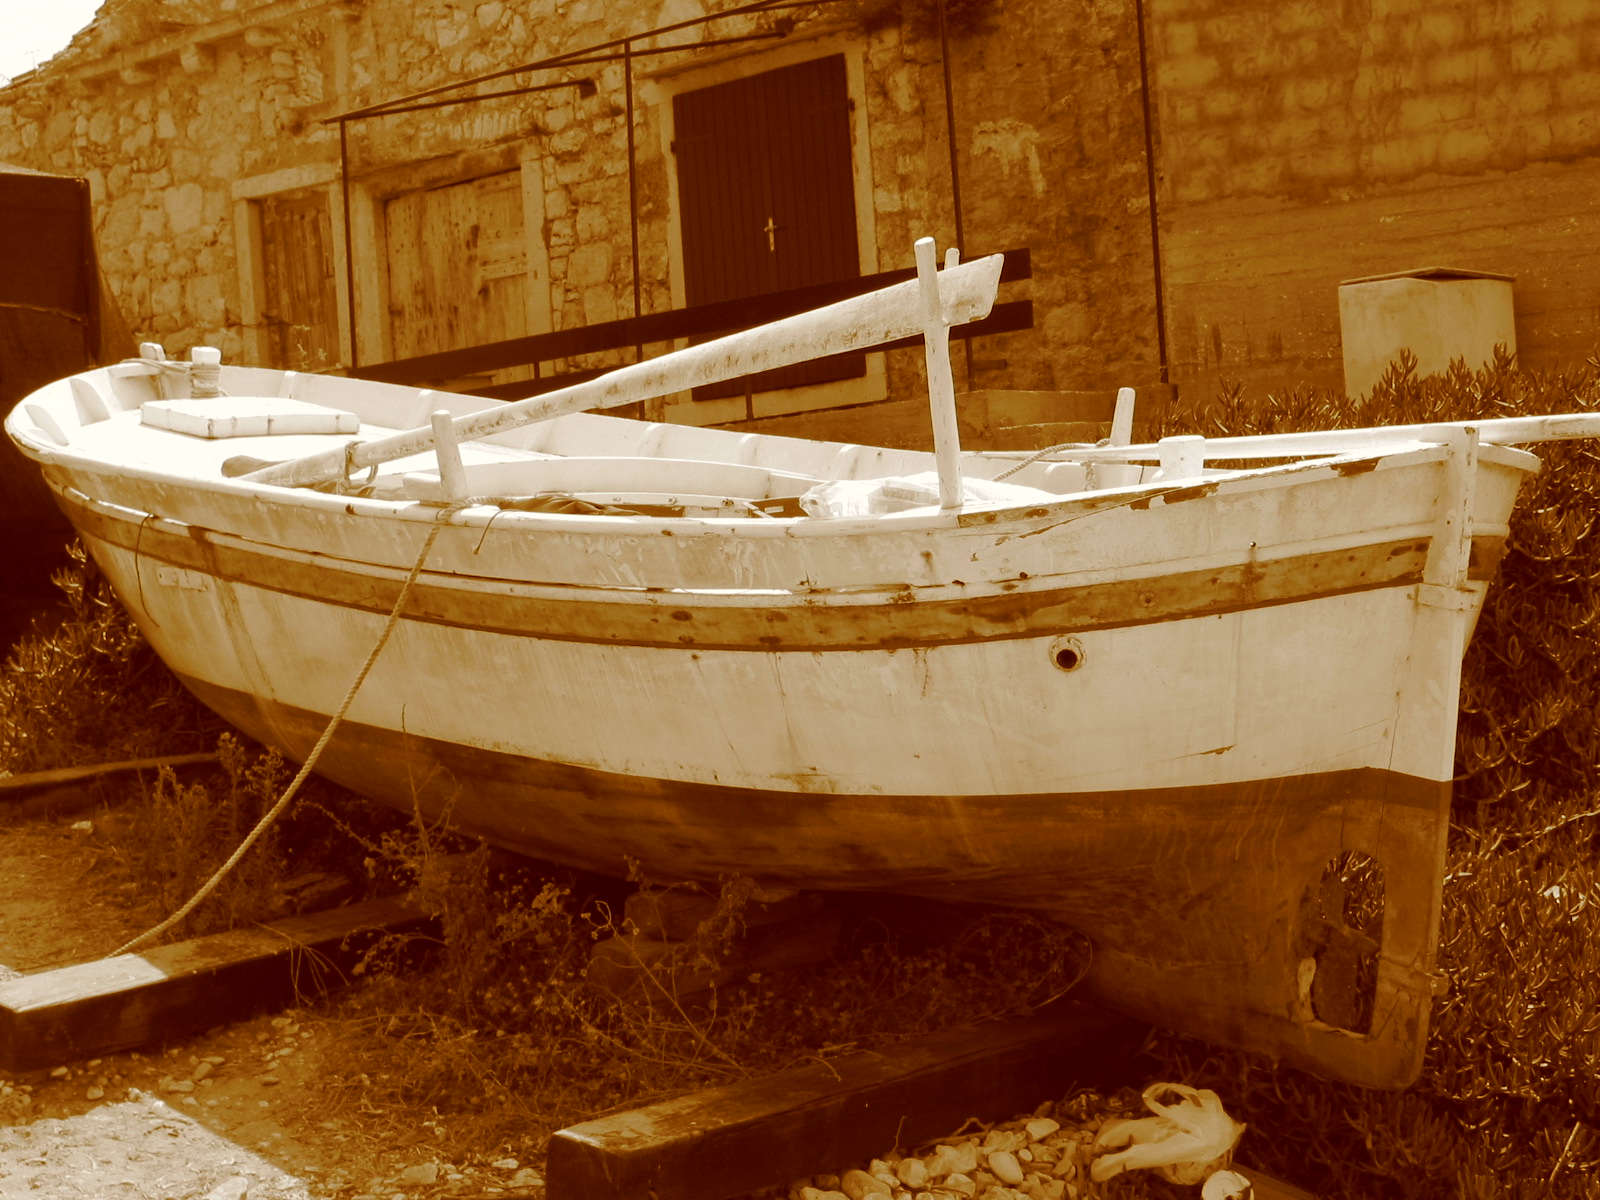 Stari brod by Belpunke